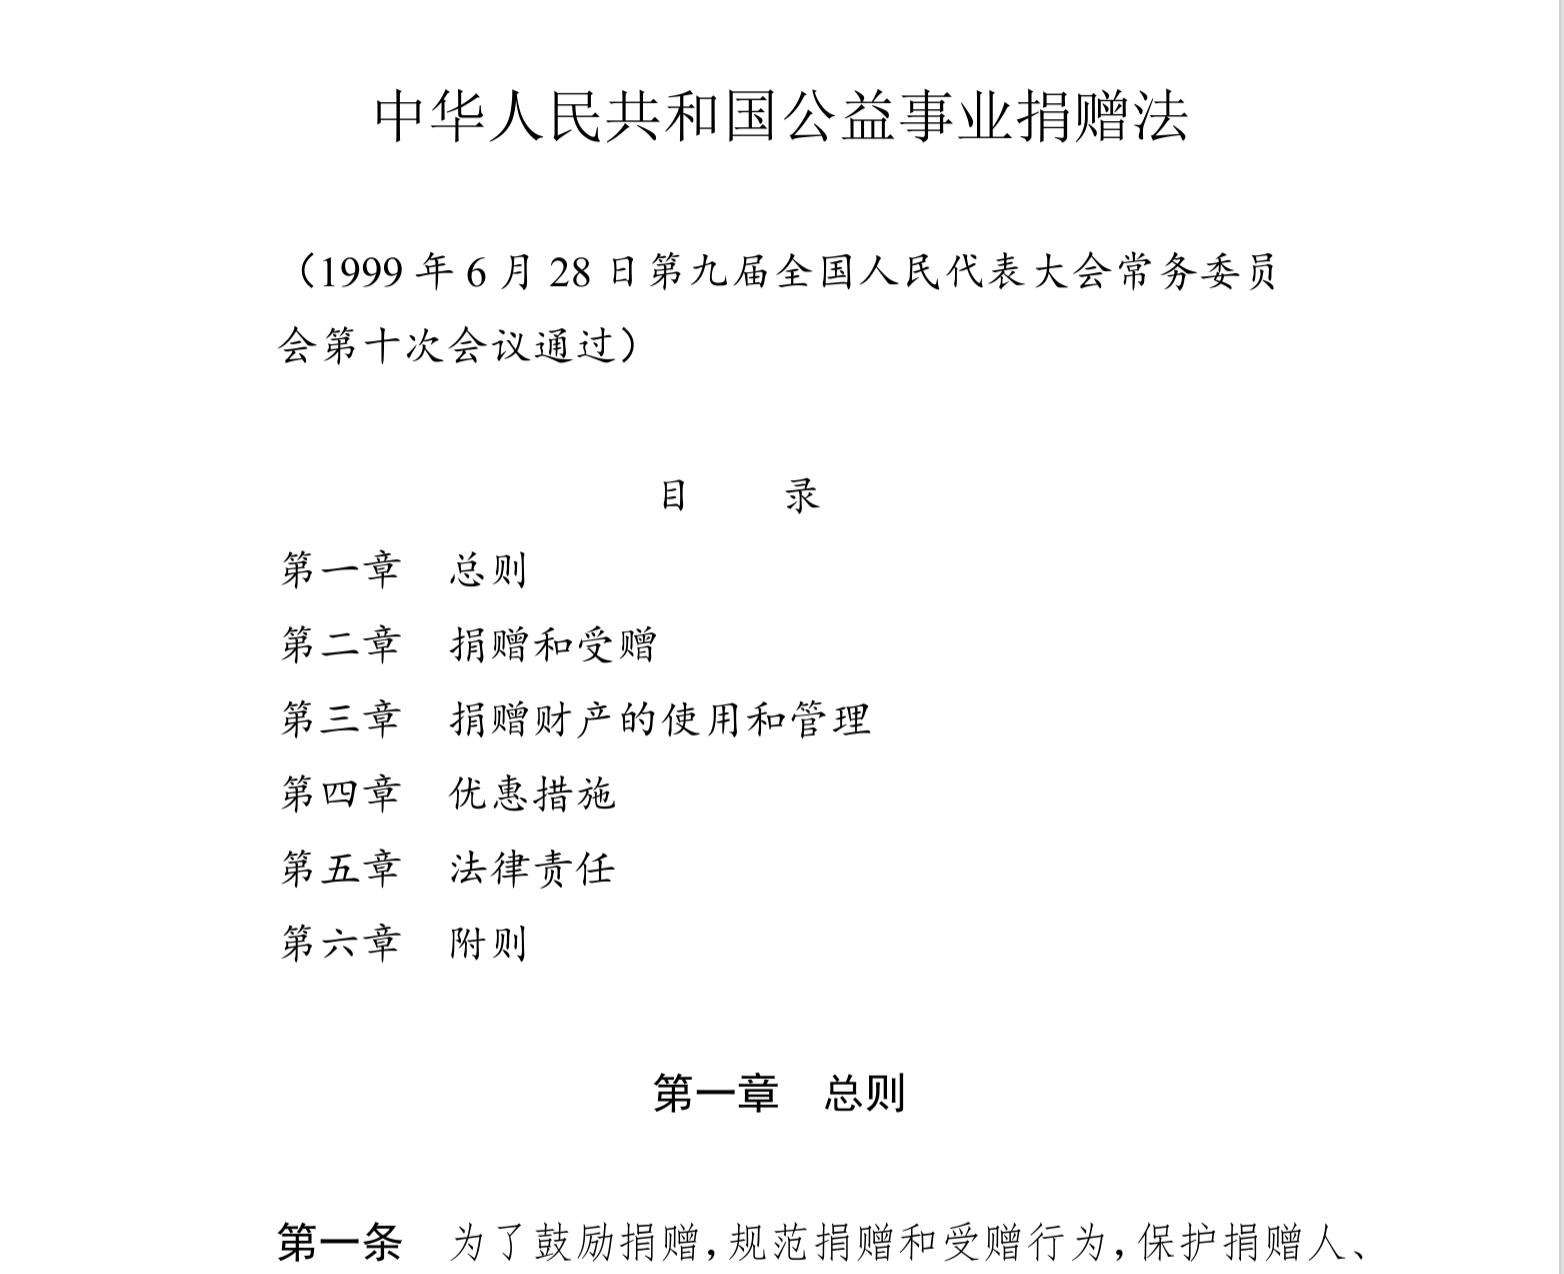 中华人民共和国公益事业捐赠法(中英文对照版)